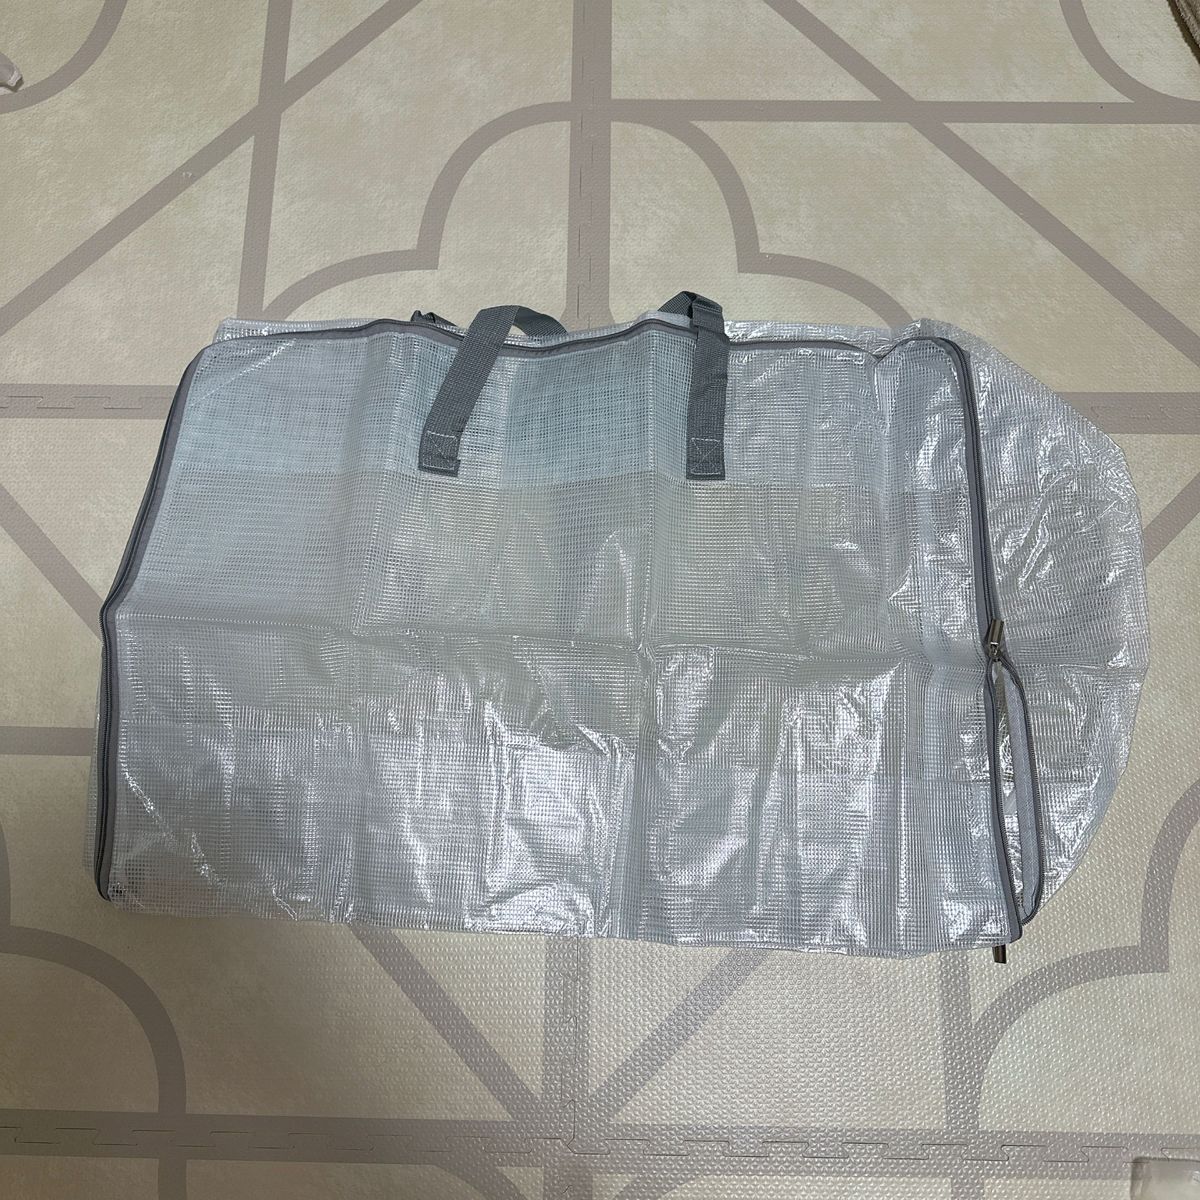 布団 衣類 収納袋 移動しやすい 持ち手付き 半透明仕様 PVC素材 ダブルファスナー 防水 ランドリーバッグ